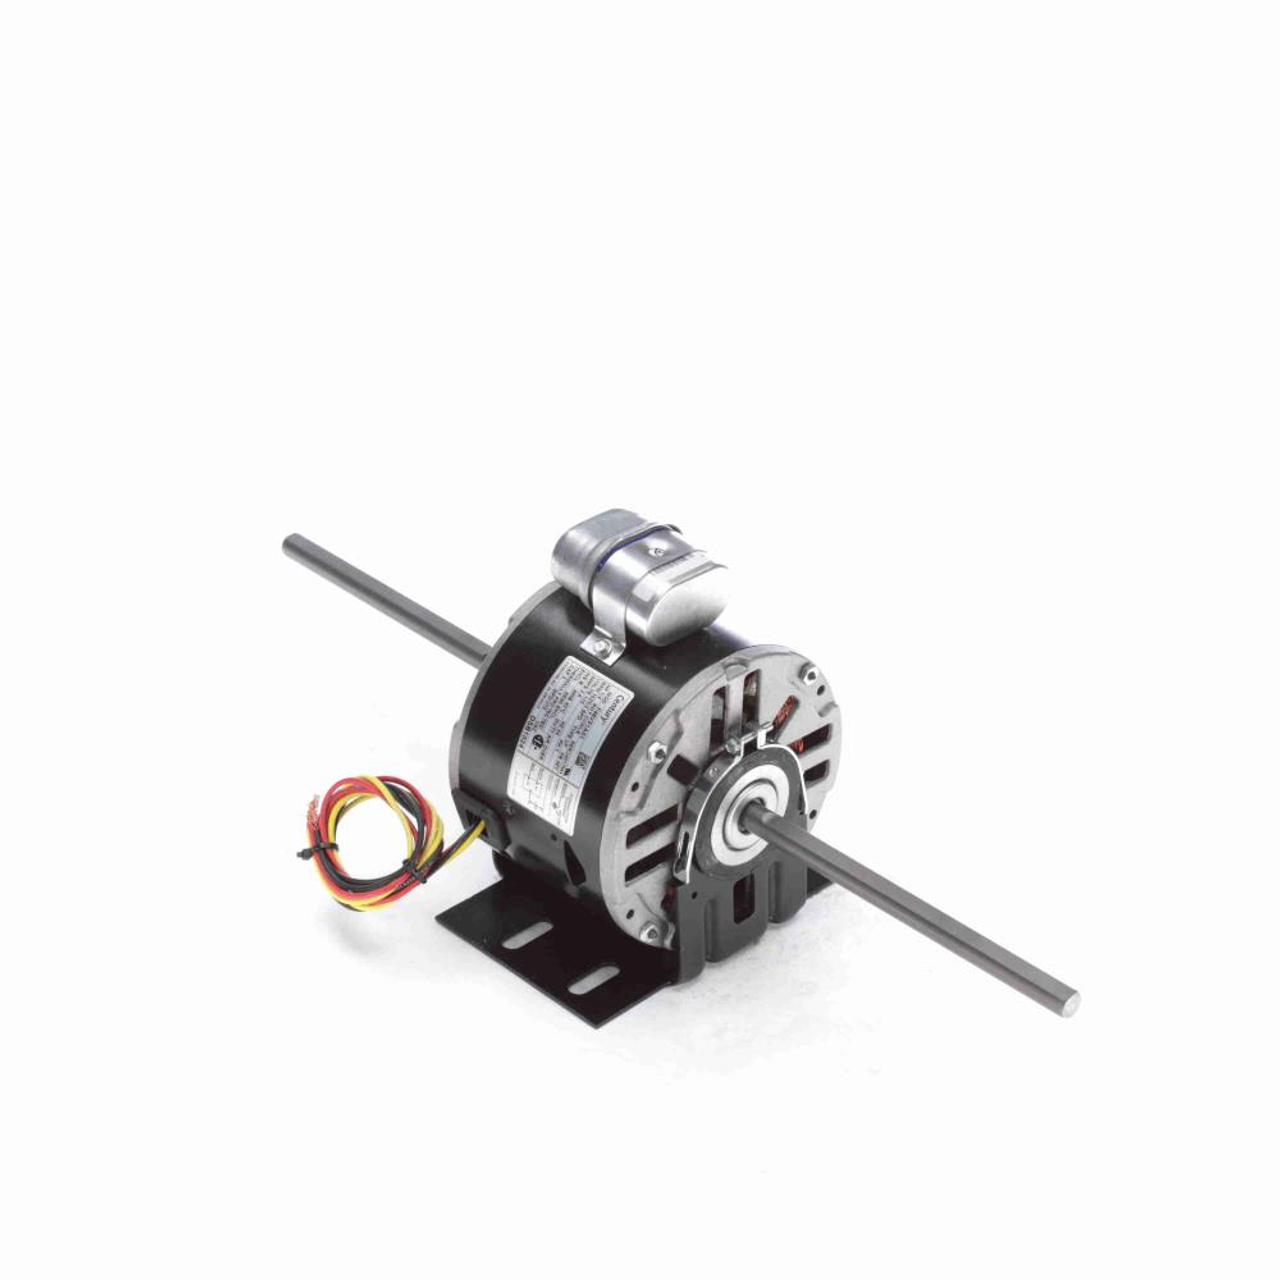 DSB1024 5-5/8" Diameter Double Shaft Fan/Blower Motor 1/4 HP